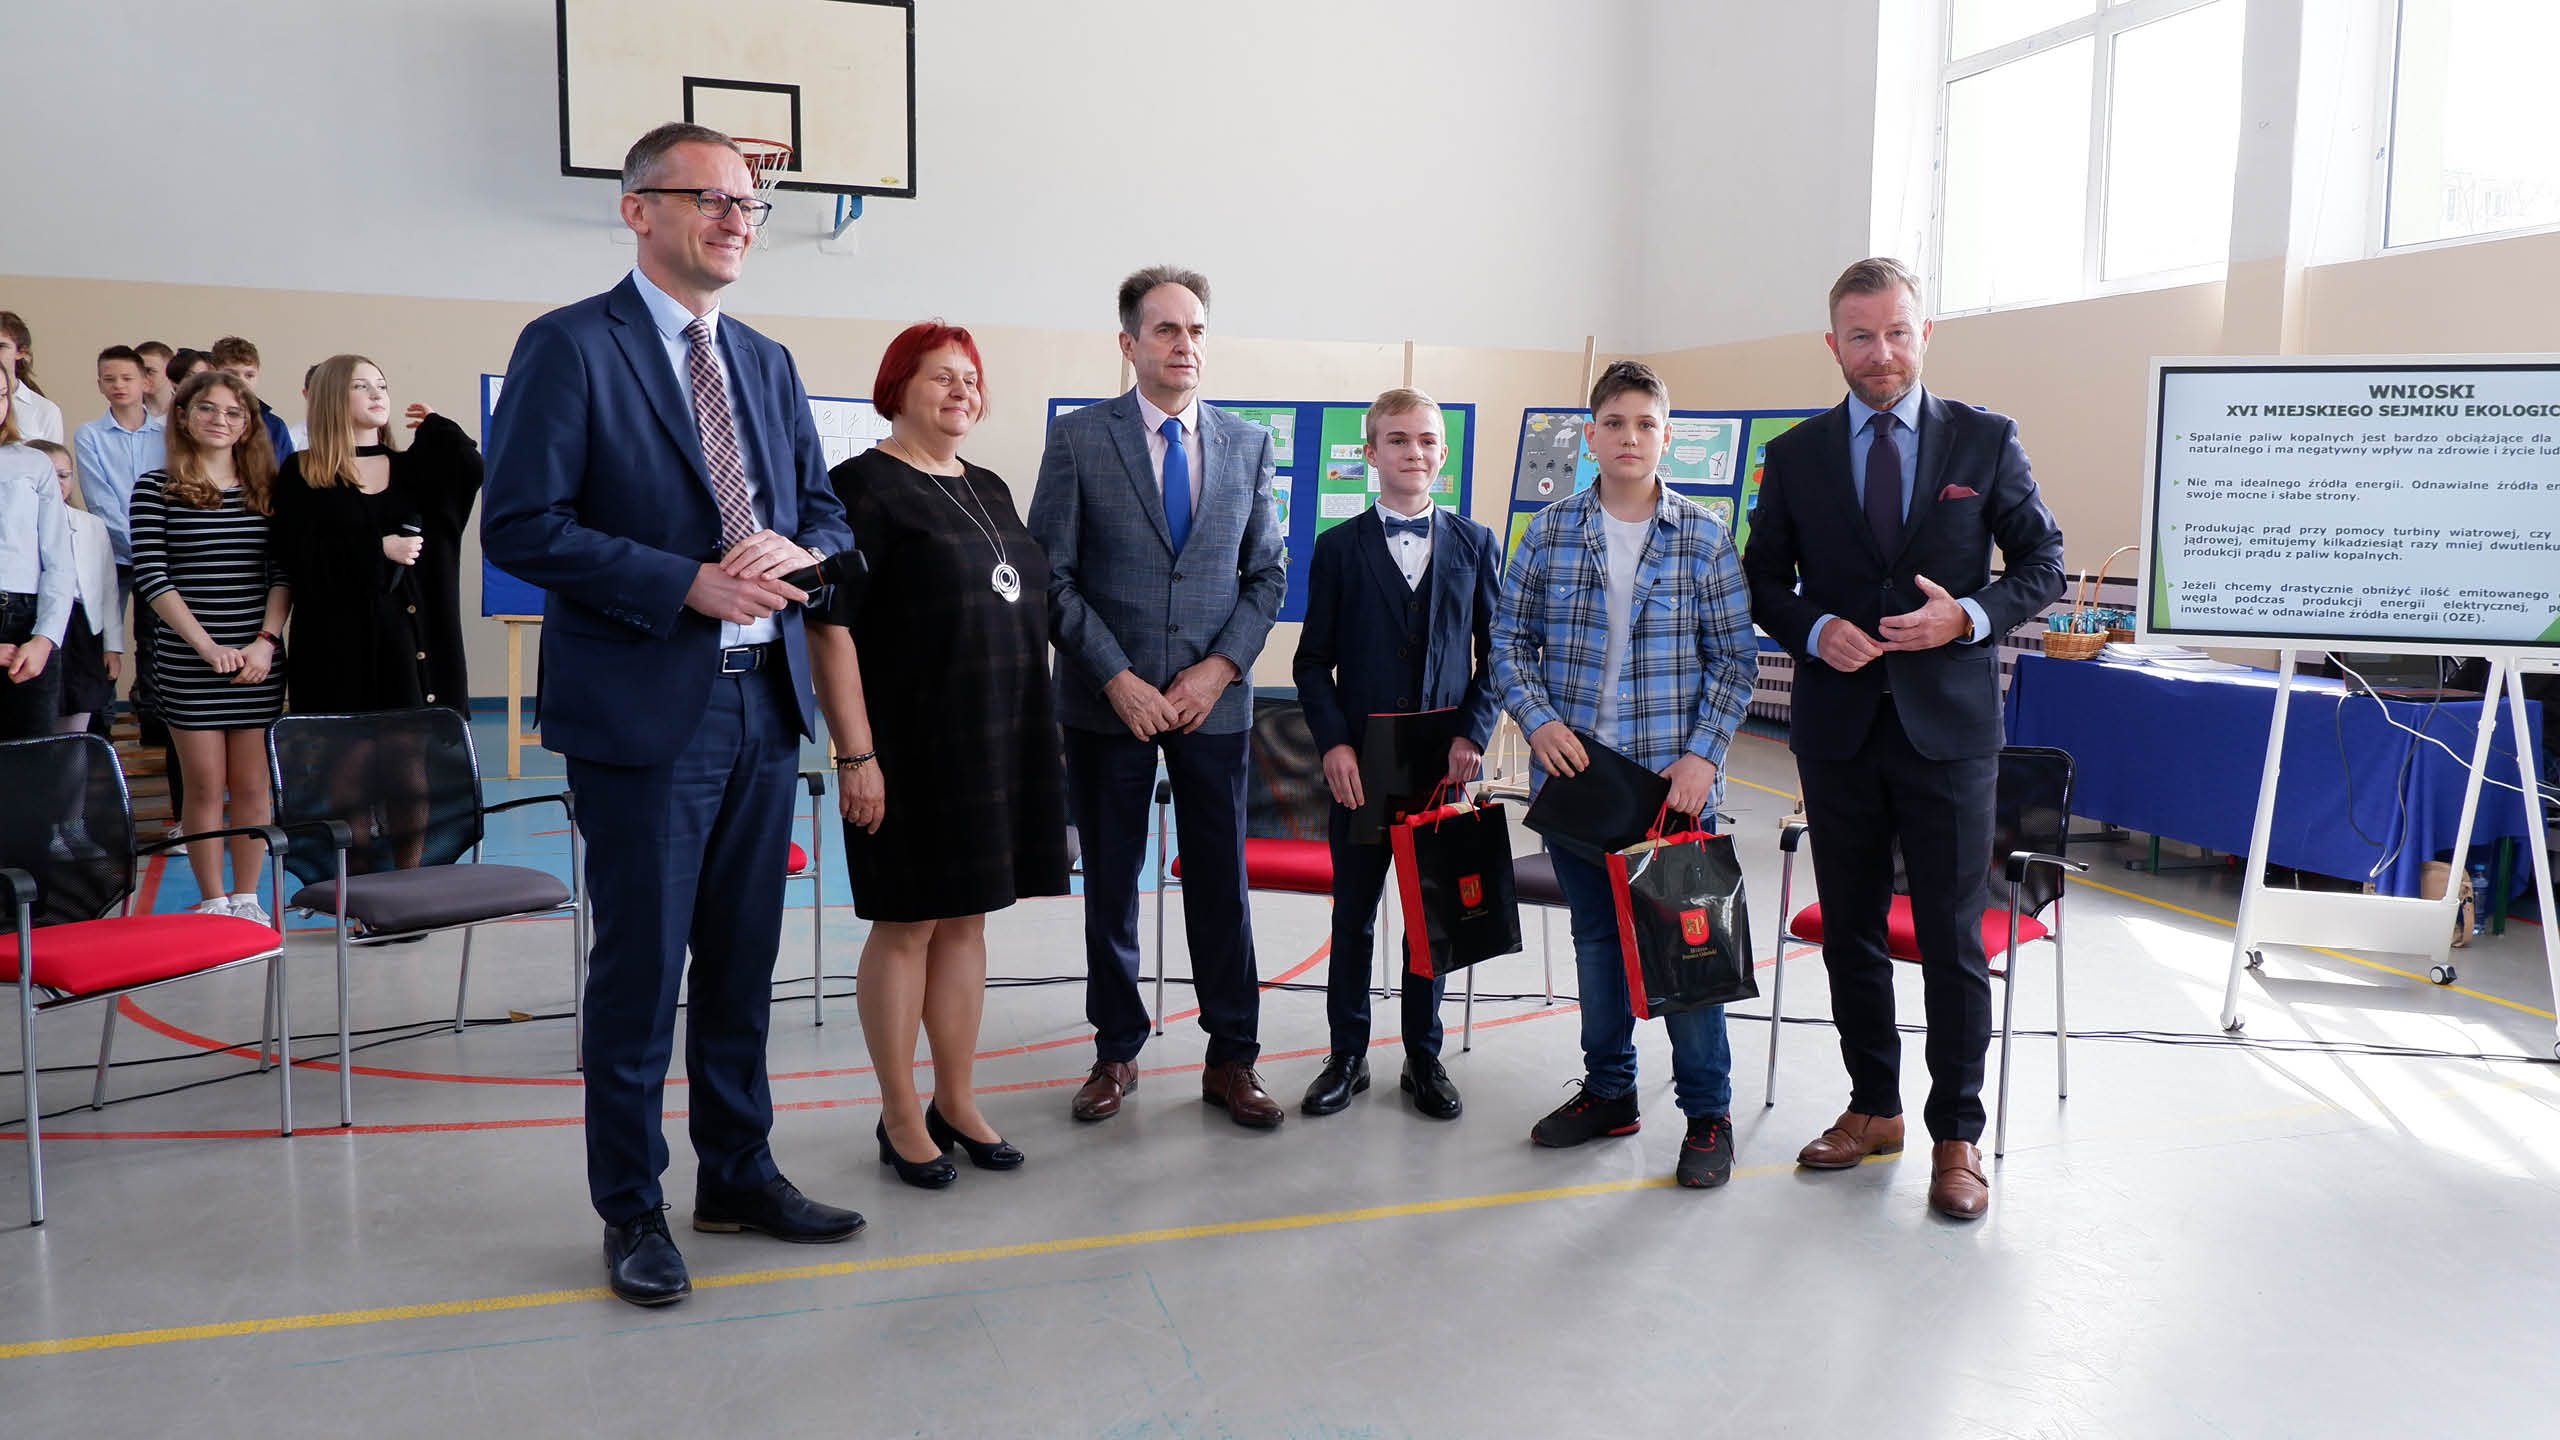 Uczniowie z Pruszcza Gdańskiego pomogli uratować życie przechodniowi